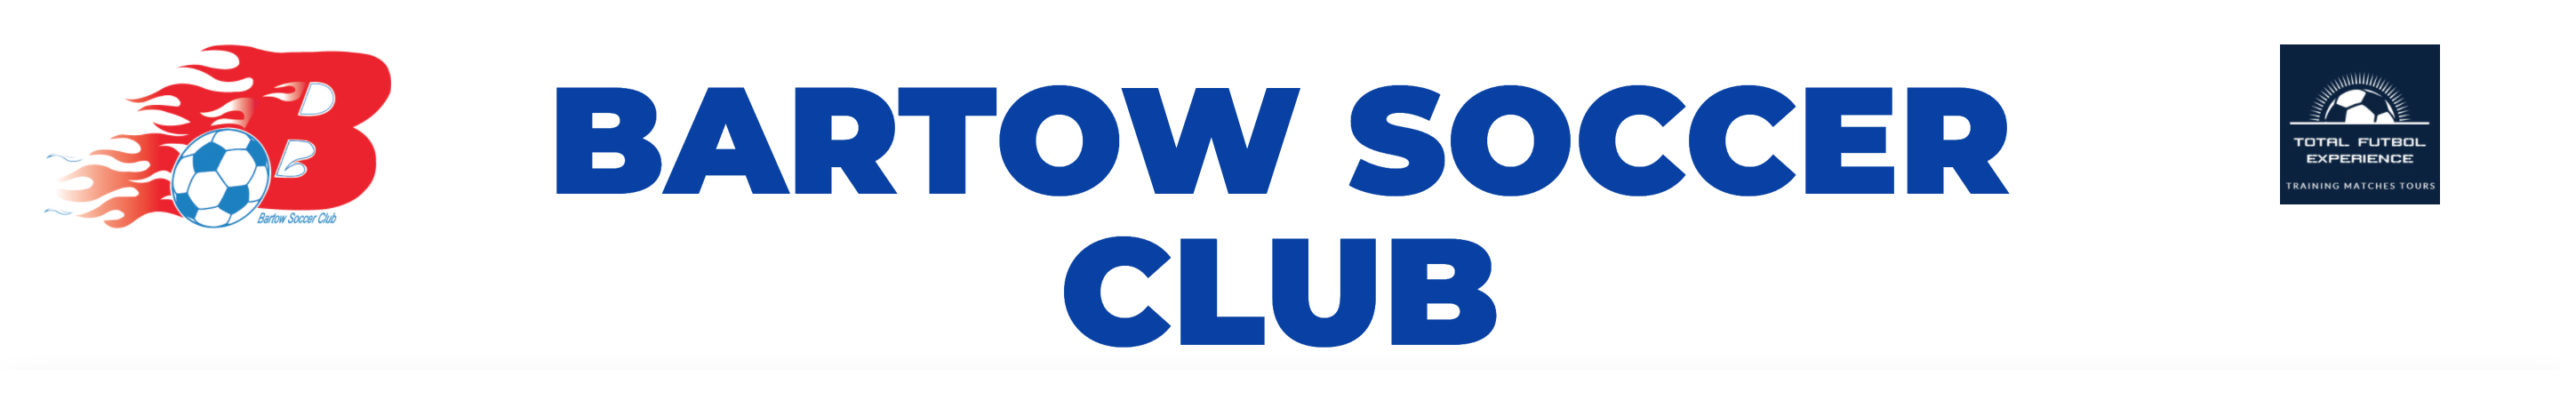 Bartow Soccer Club